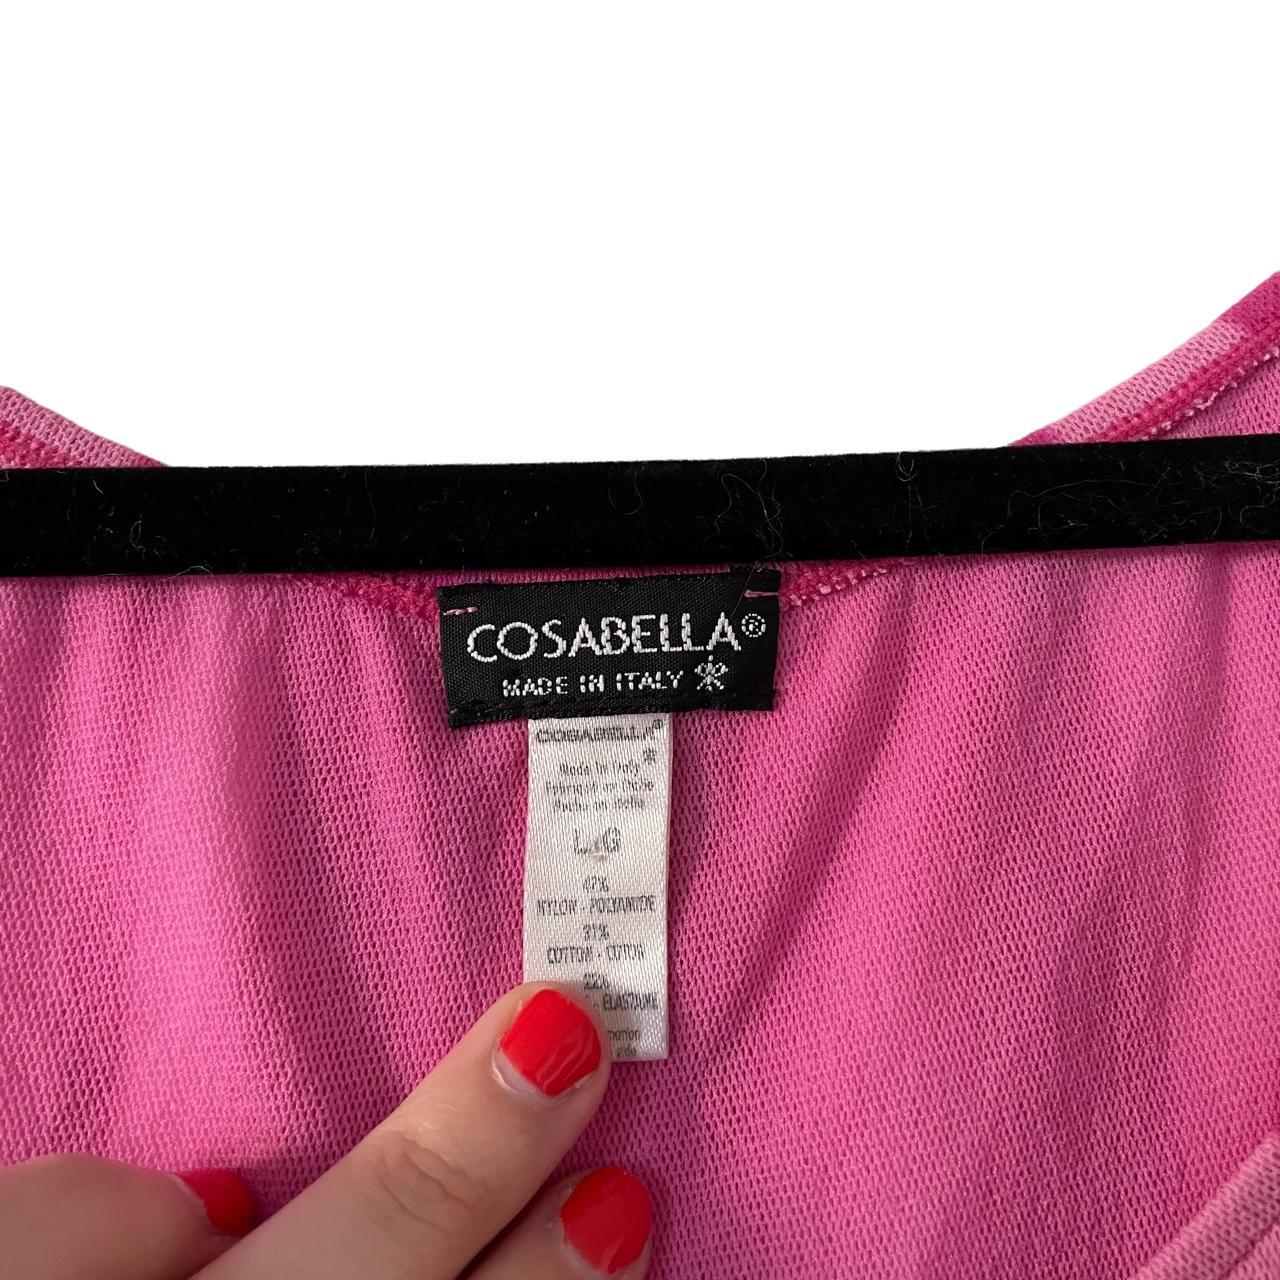 Cosabella Women's Pink Shirt | Depop